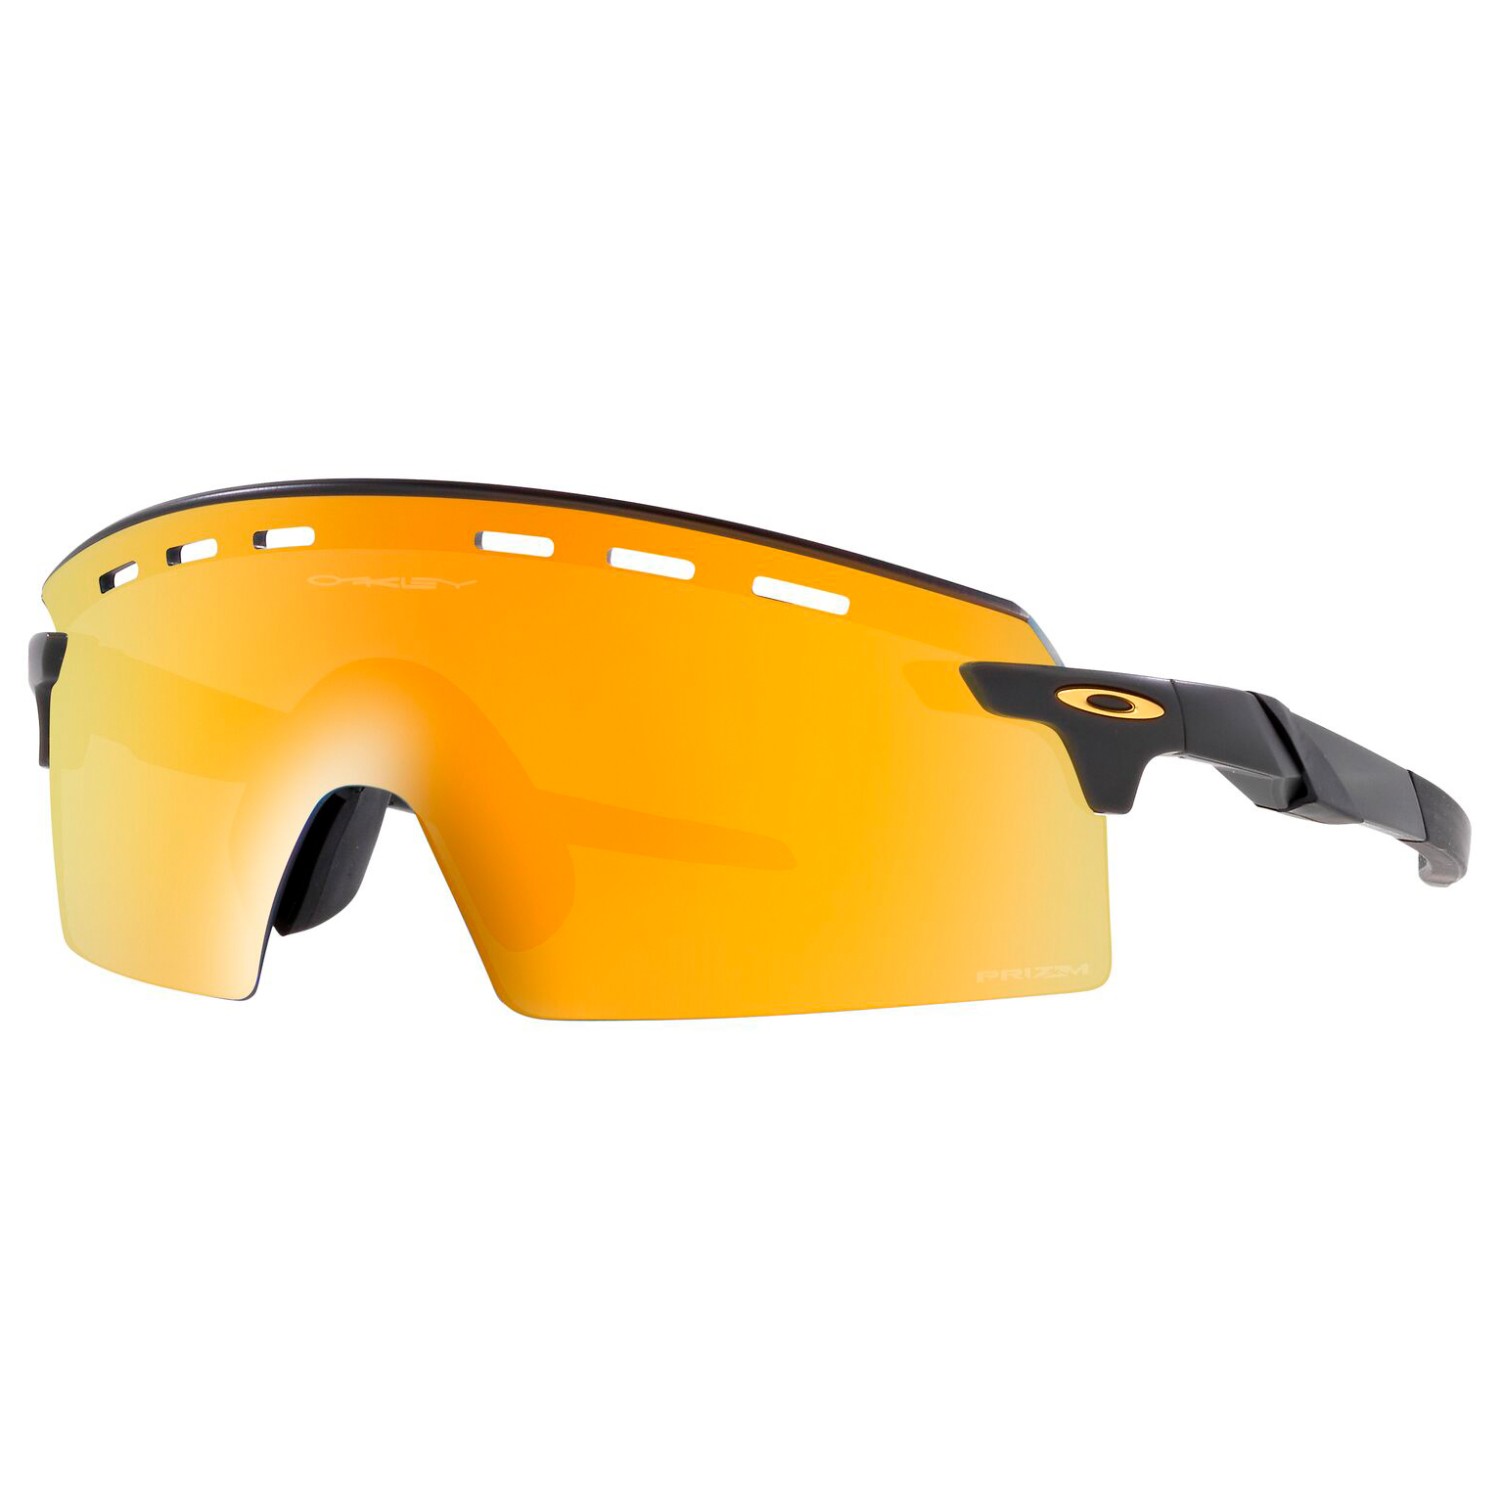 Велосипедные очки Oakley Encoder Strike Vented S2 (VLT 20%), цвет Tdf Splatter